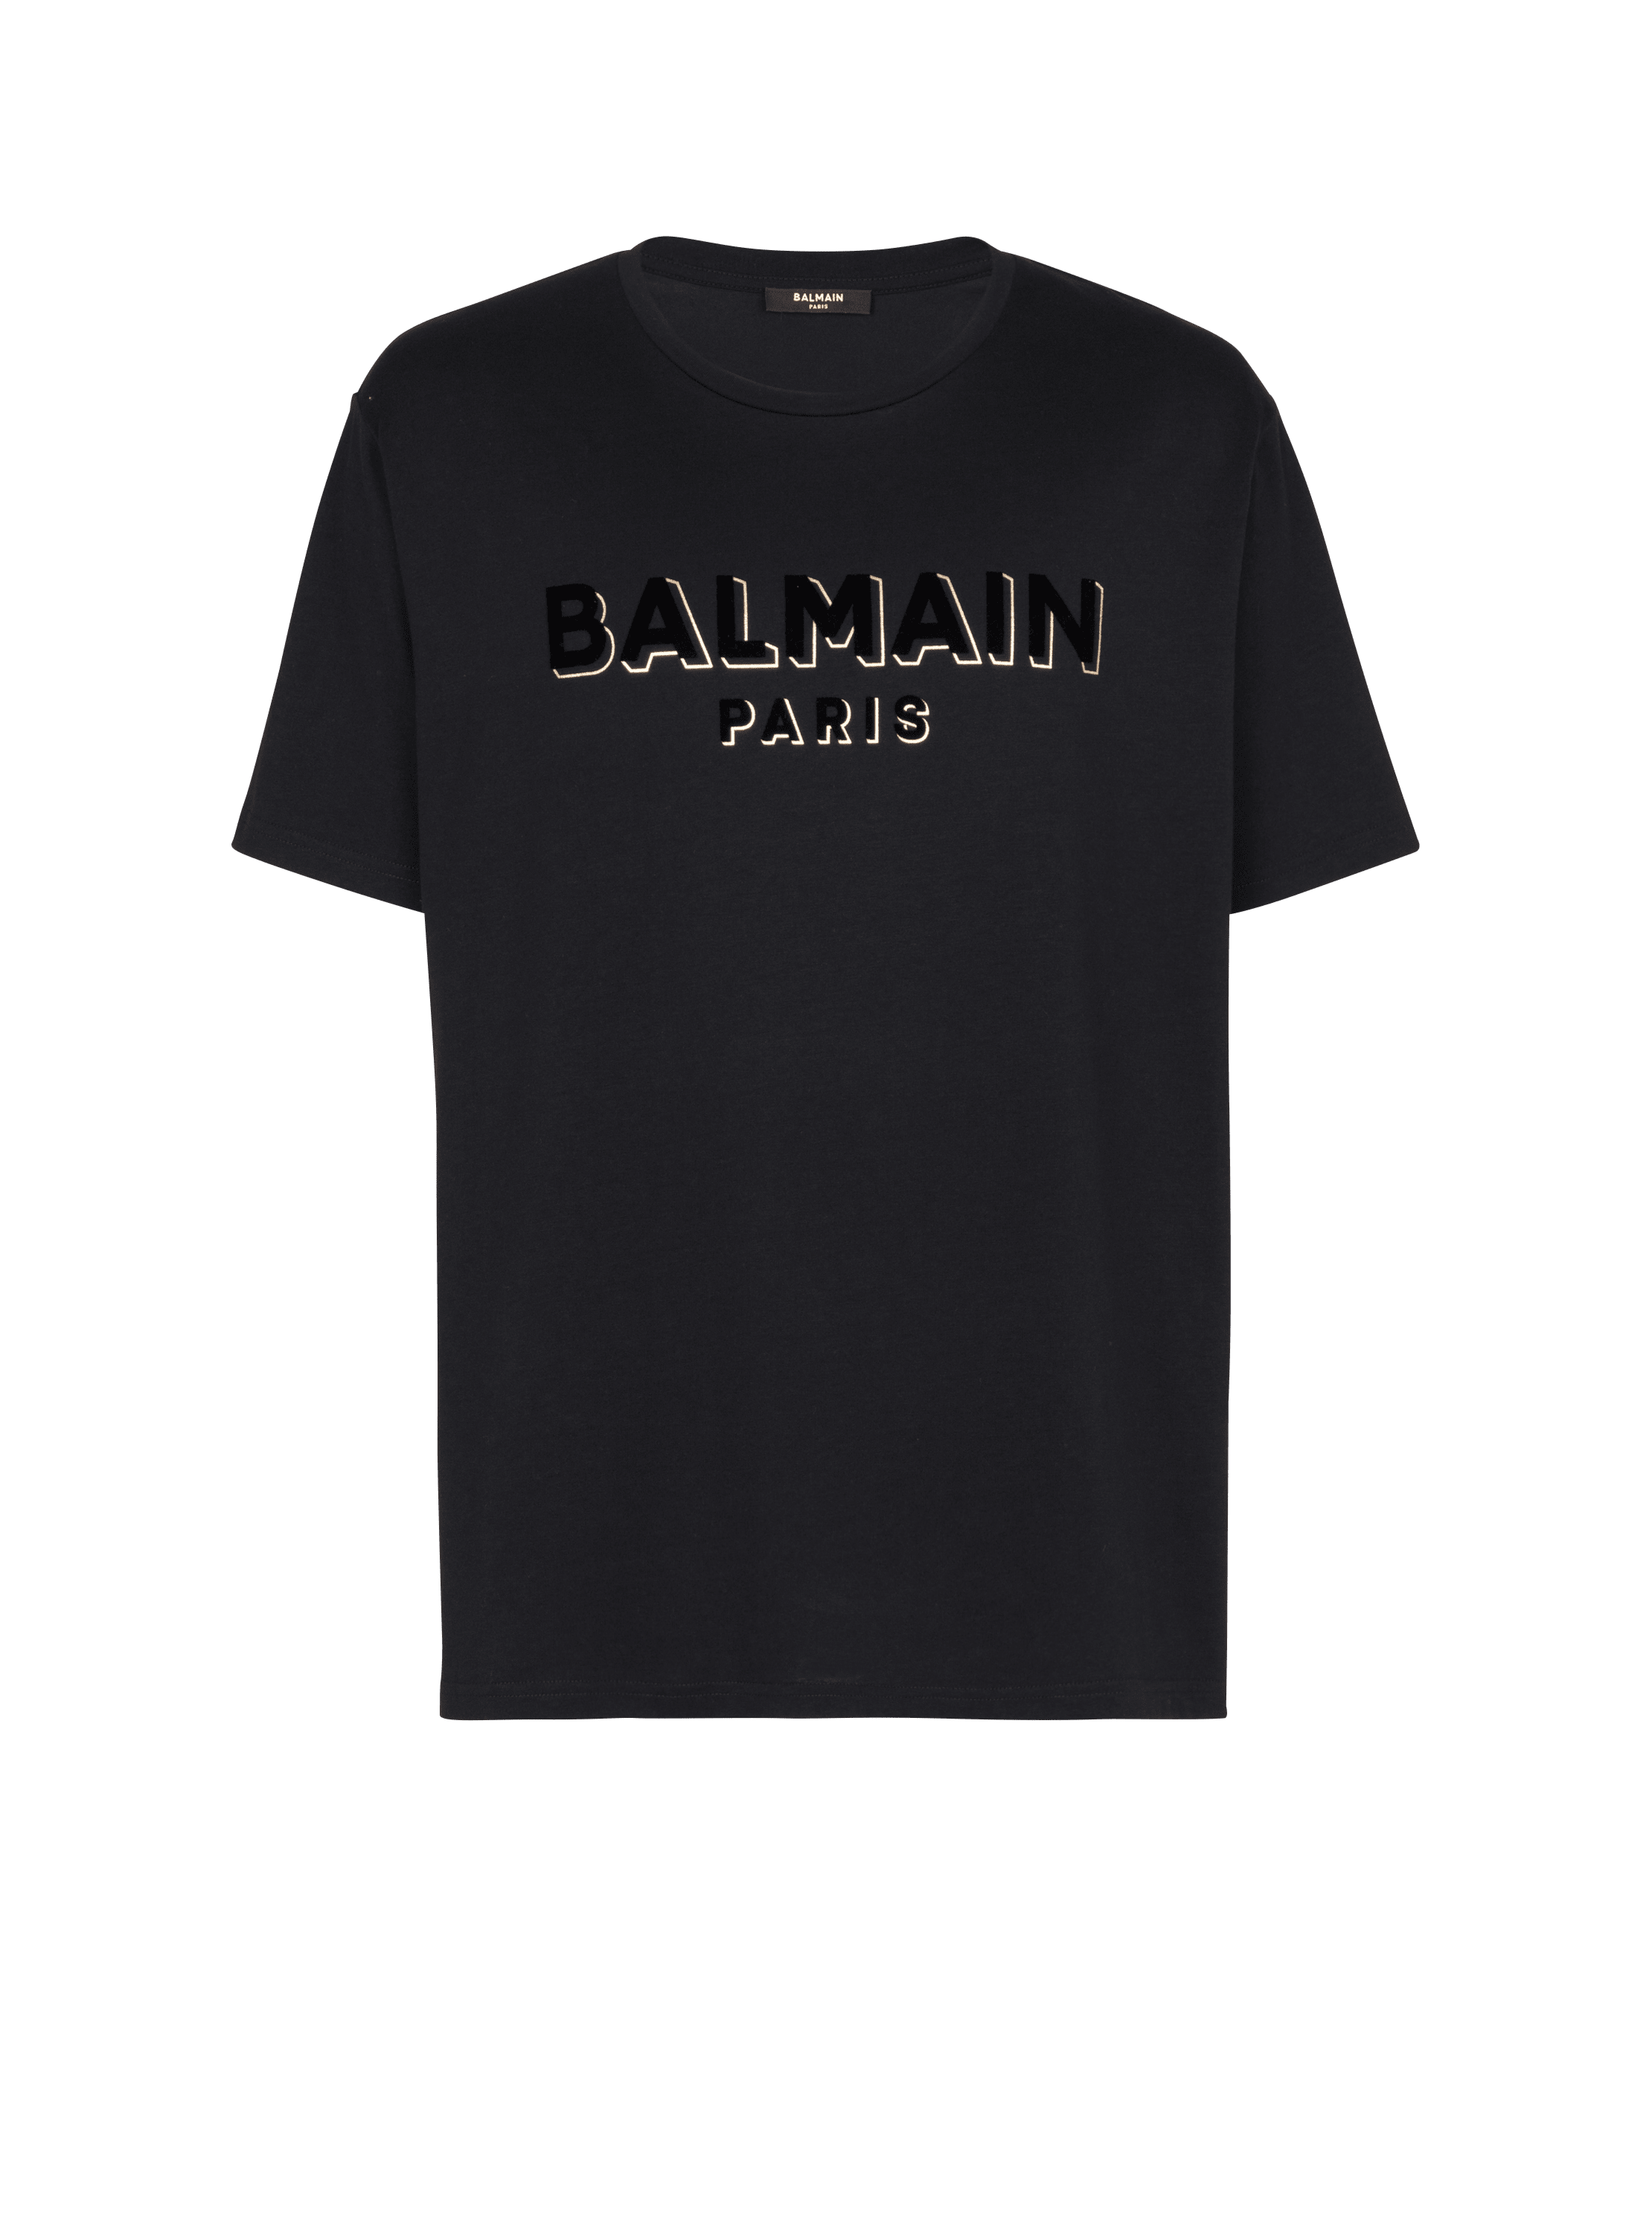 Oversize-T-Shirt aus Baumwolle mit strukturiertem Balmain-Logo, schwarz, hi-res